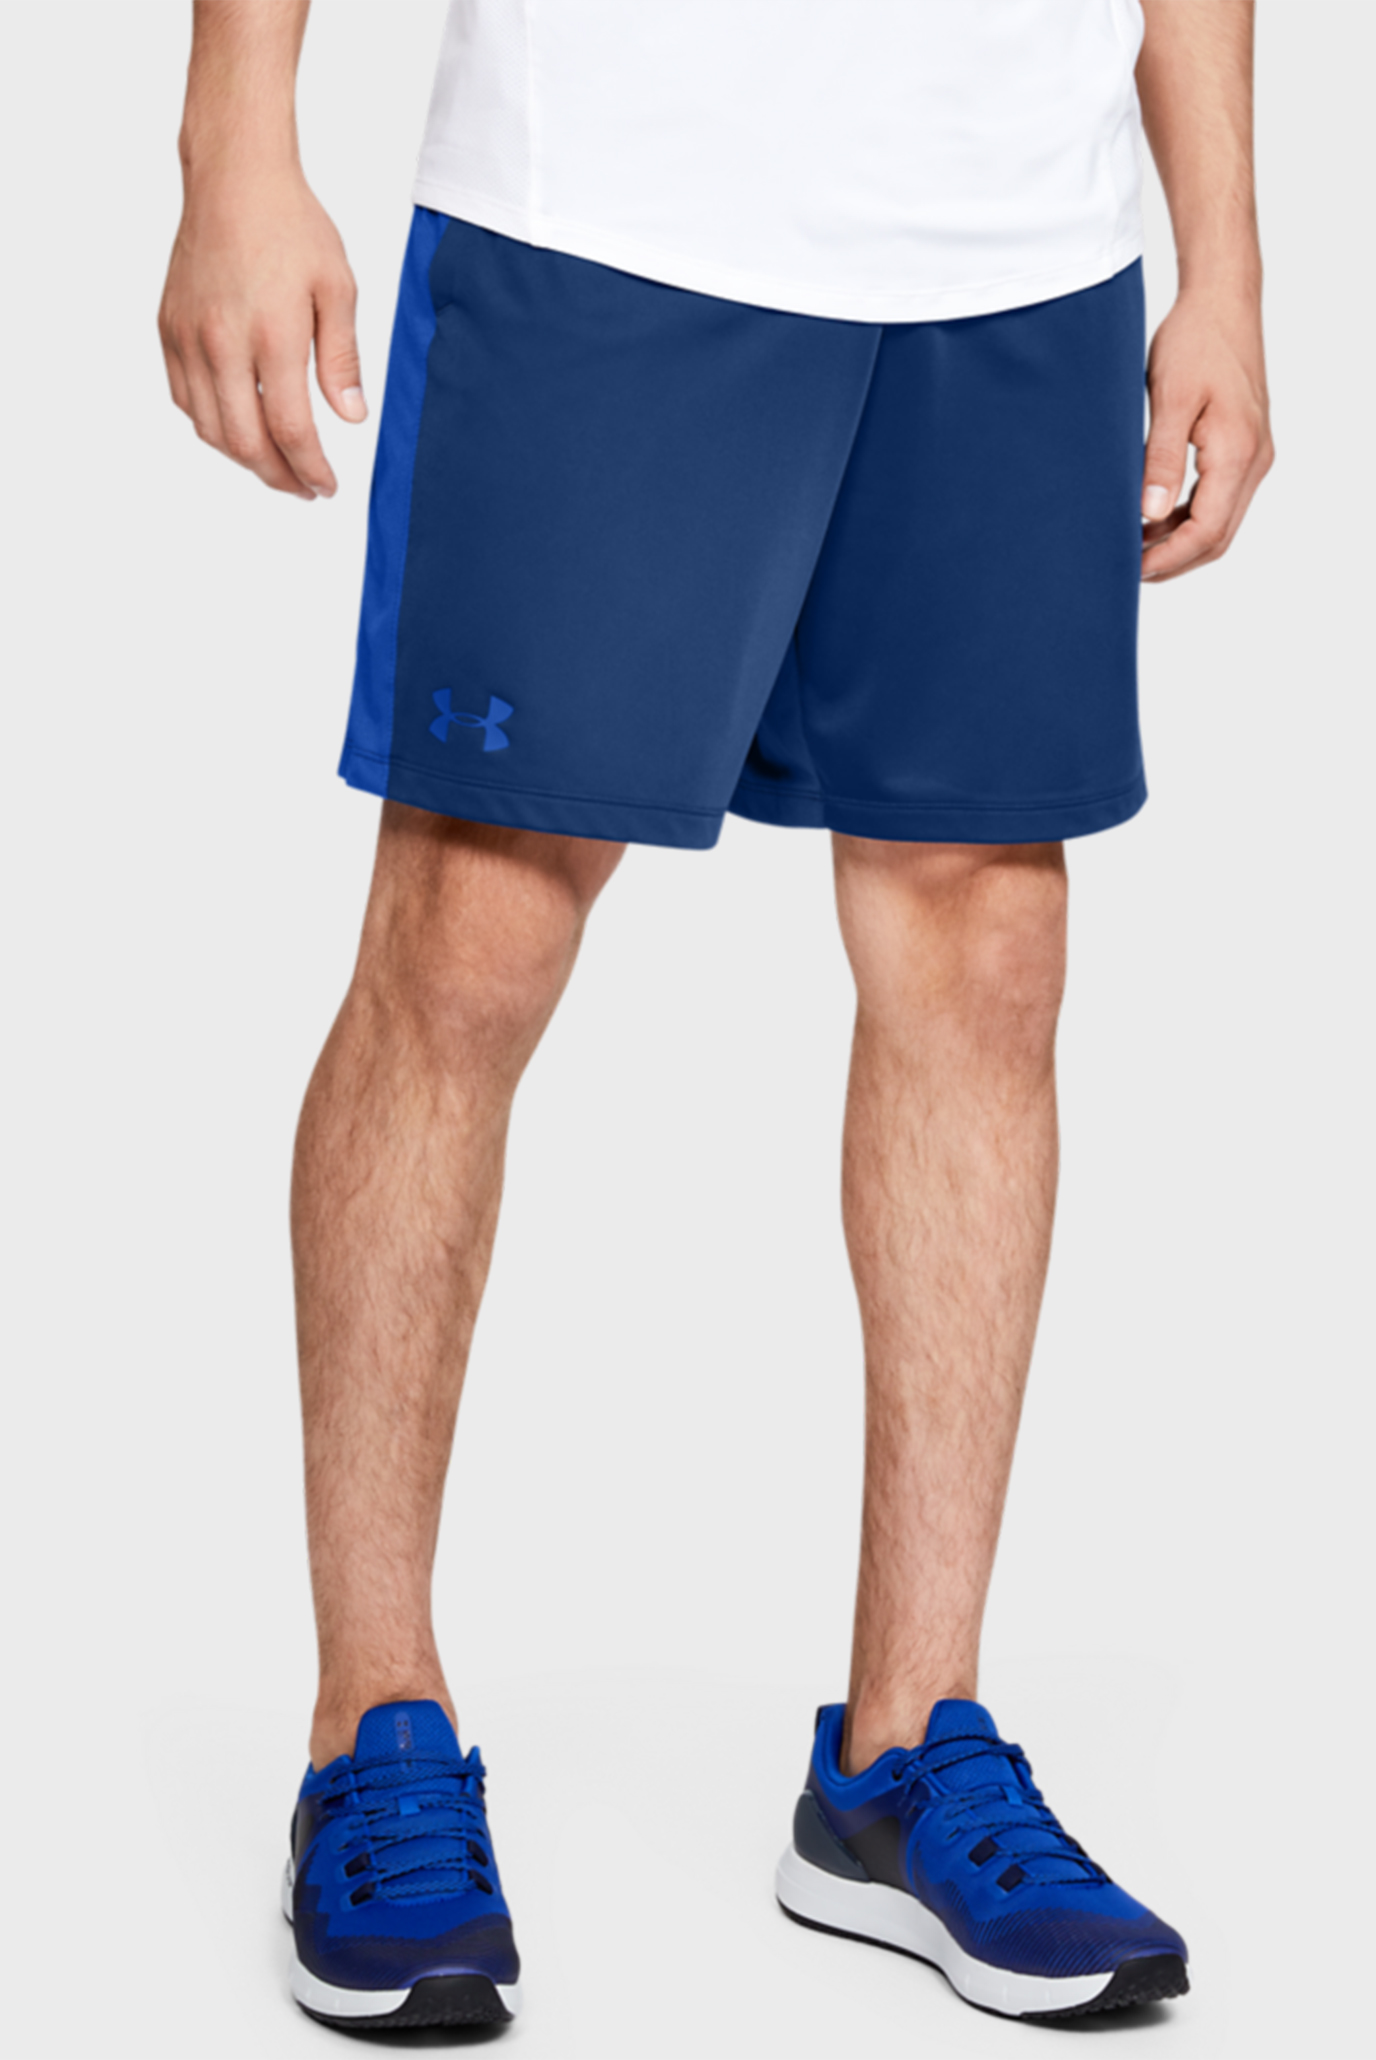 Чоловічі сині шорти MK1 Shorts 1